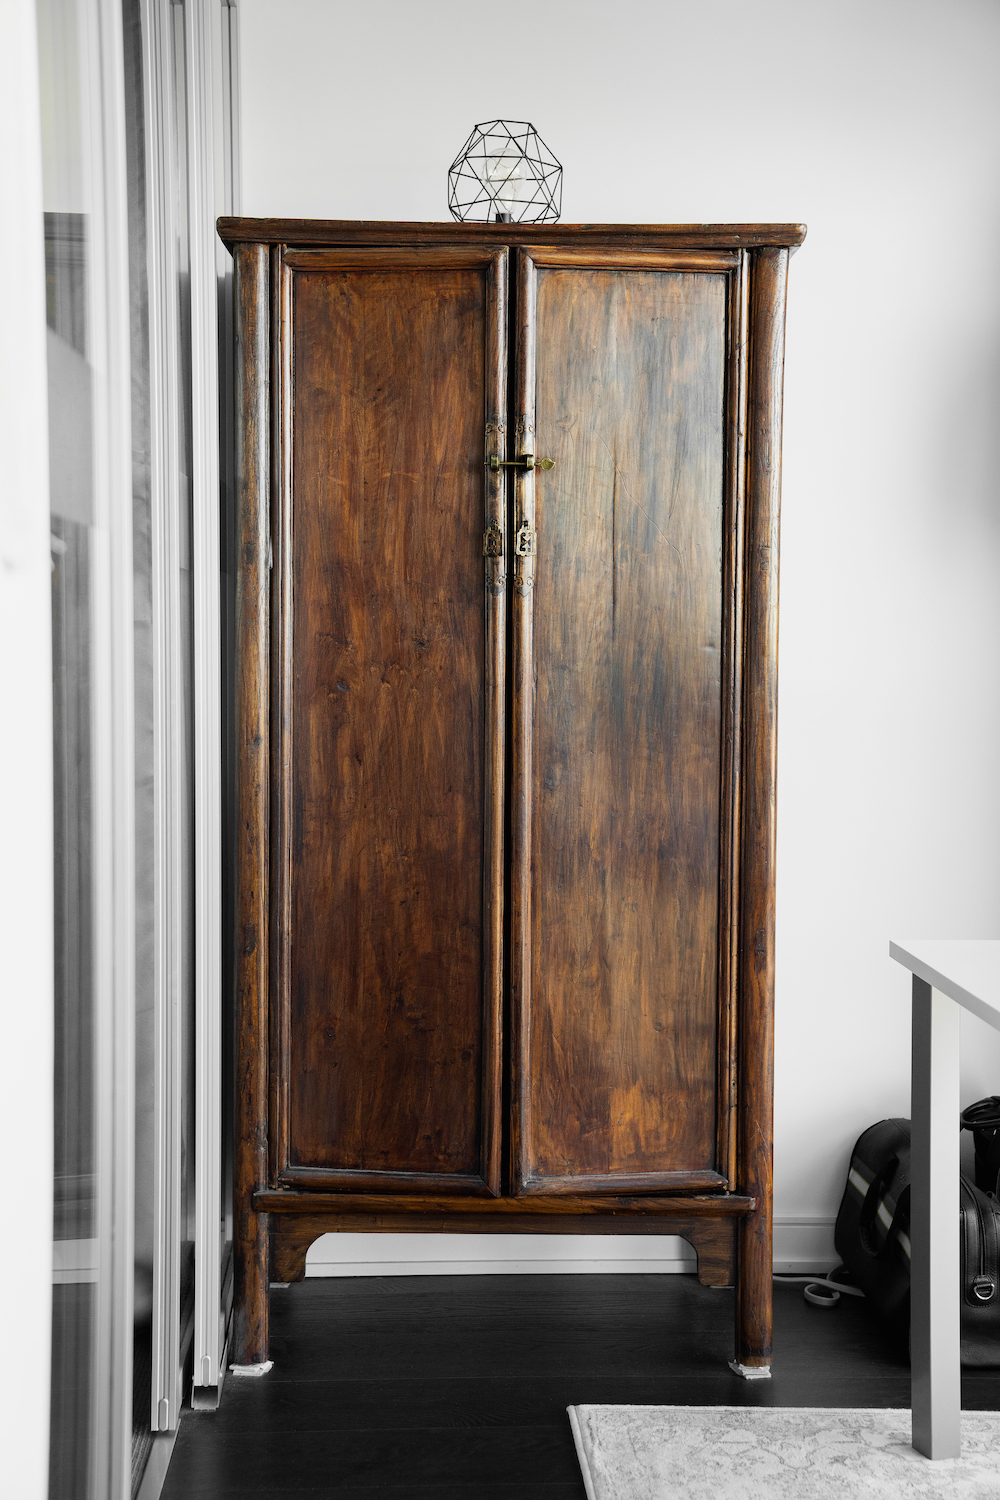 A vintage armoire